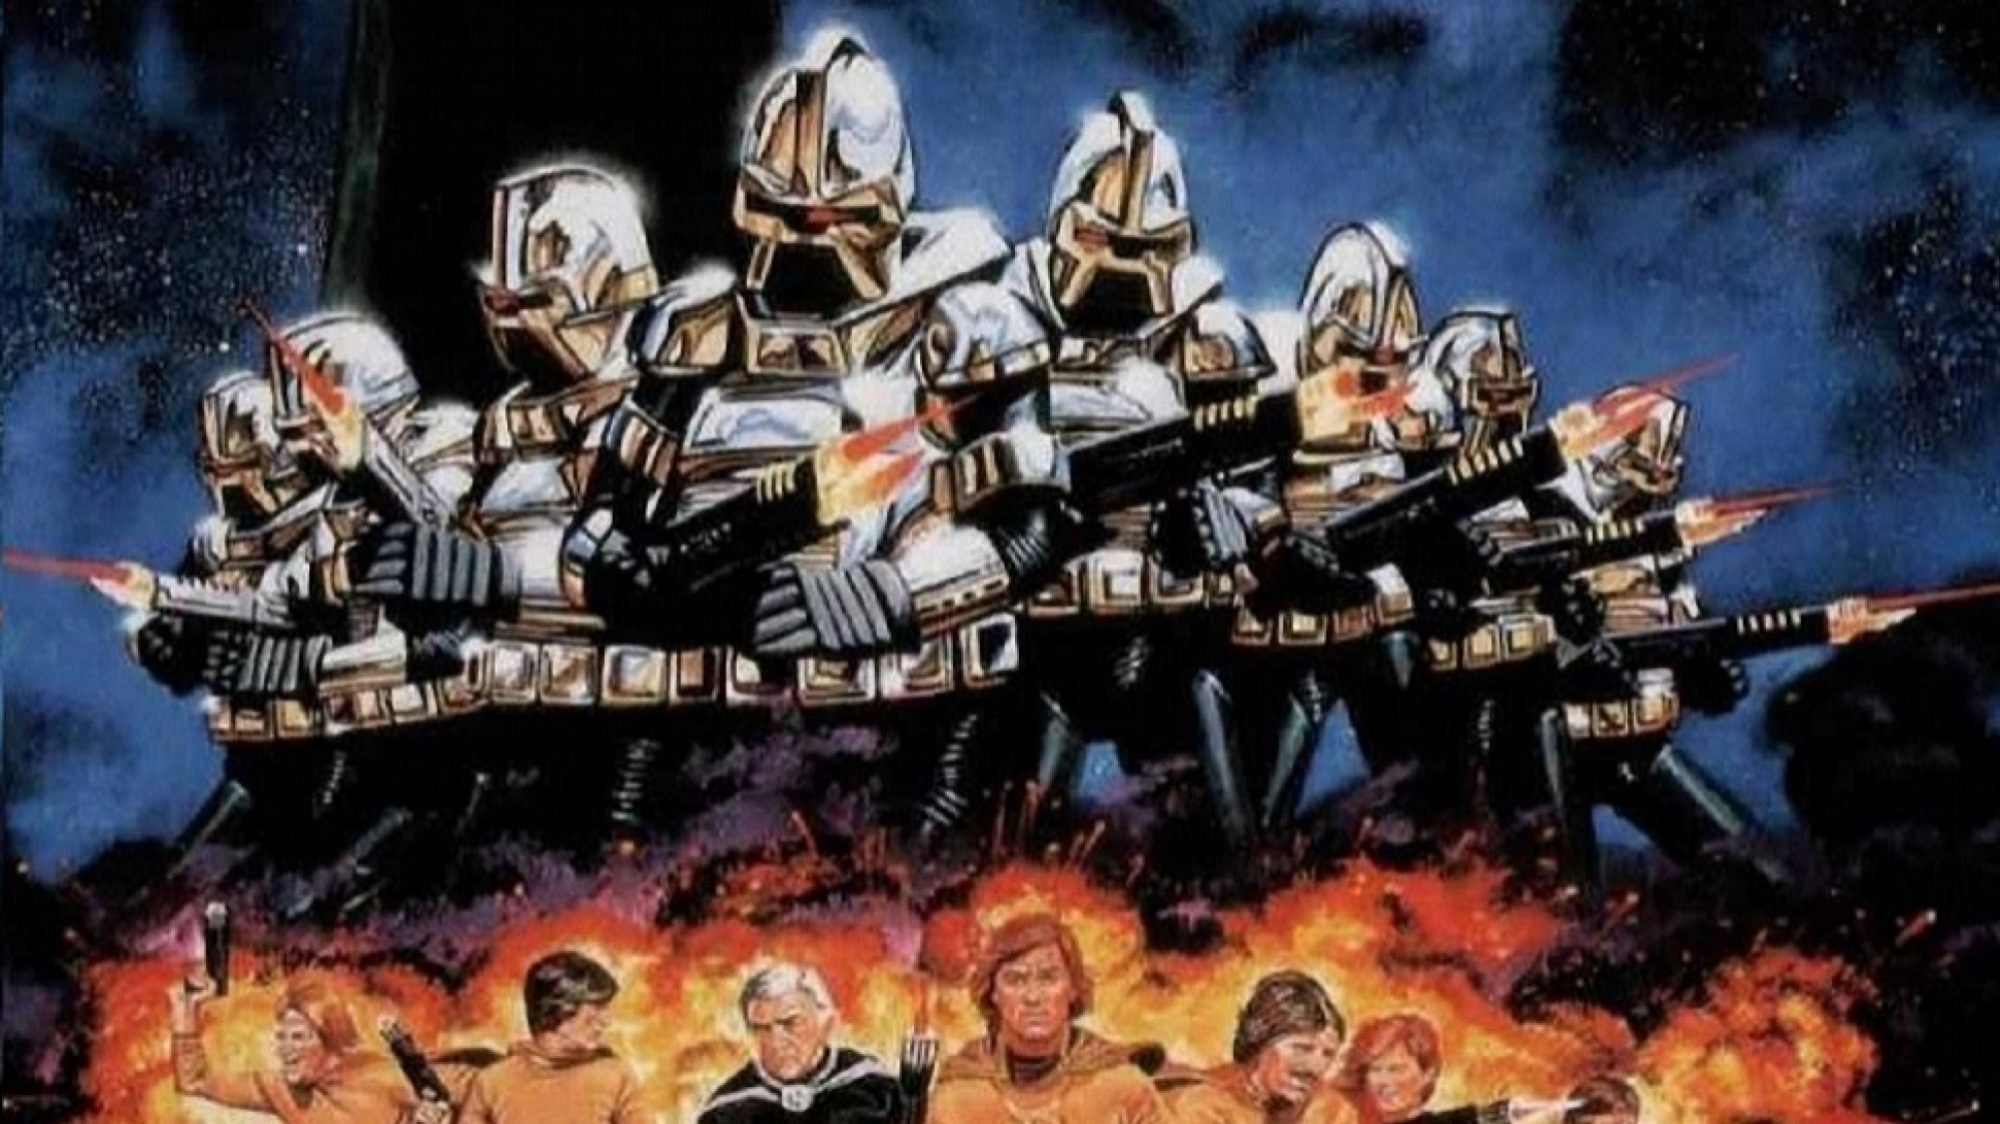 Battlestar Galactica (1978) Wallpapers